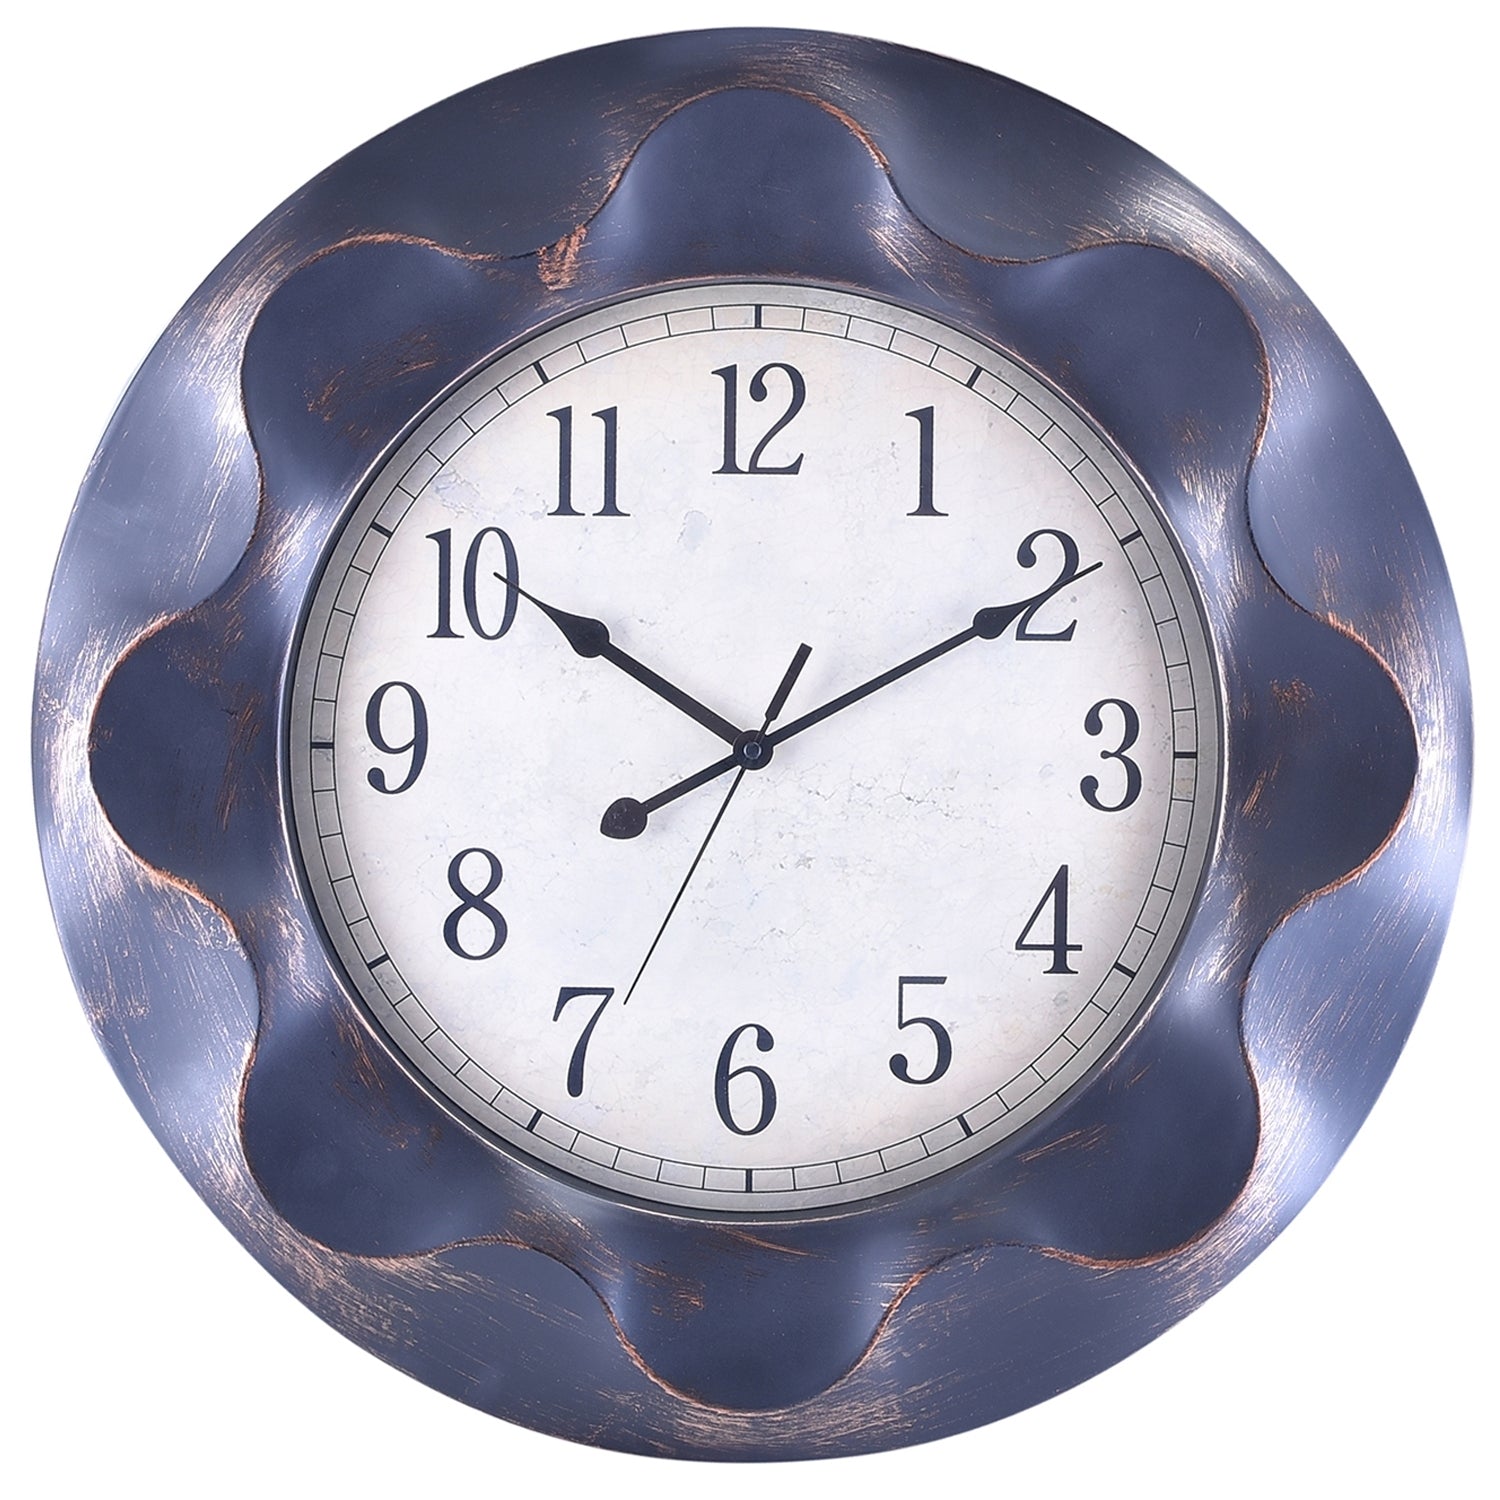 Premium Antique Design Analog Wall Clock 44